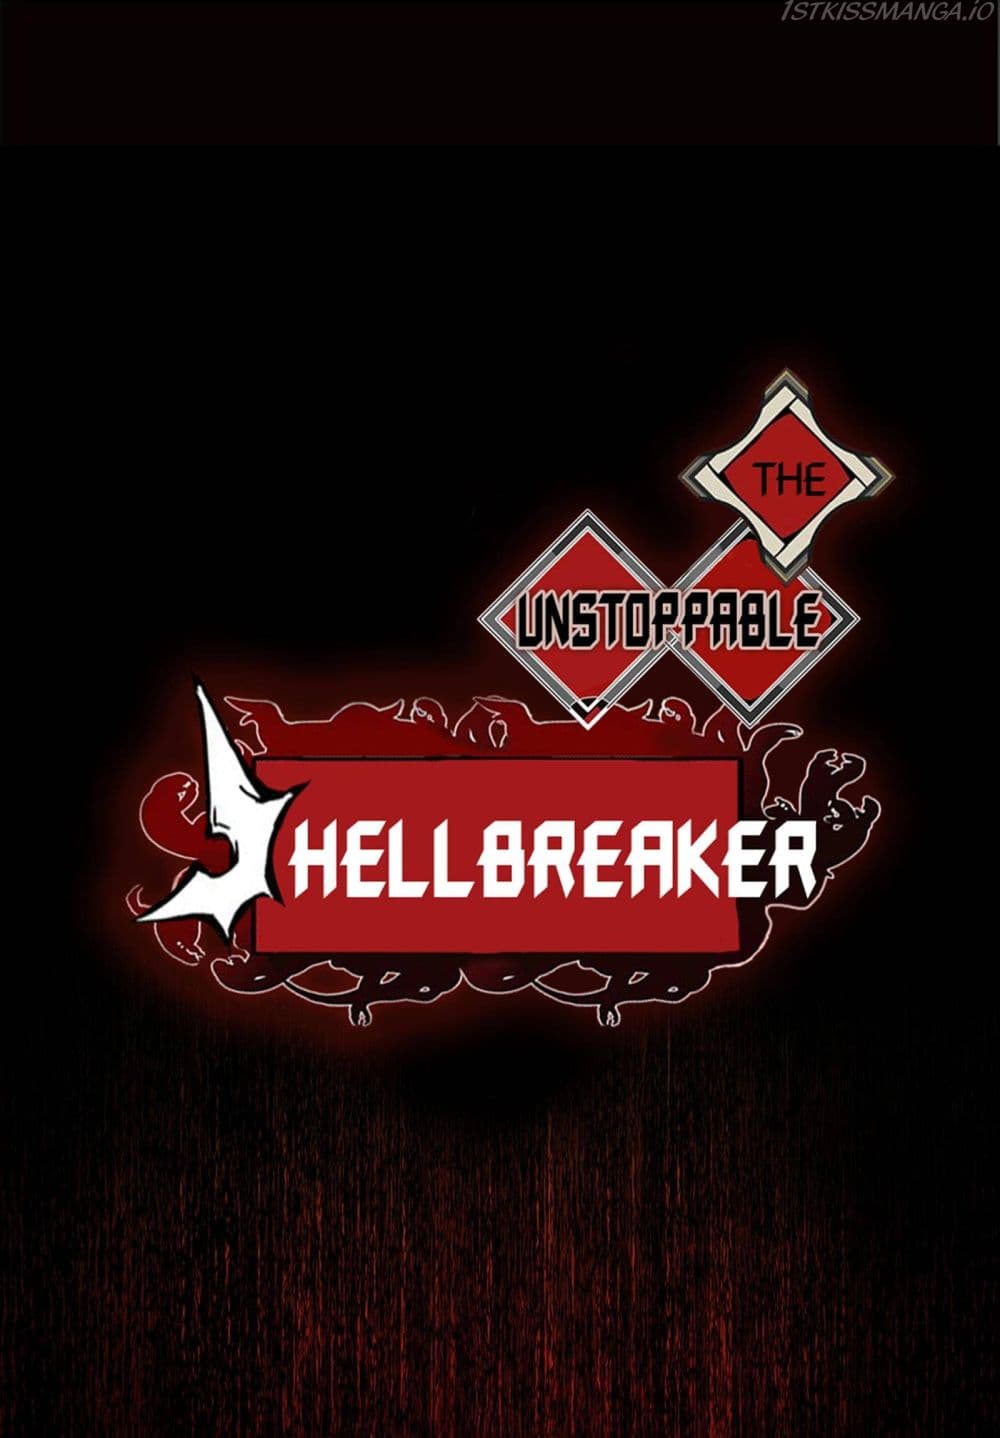 The Unstoppable Hellbreaker 27-27